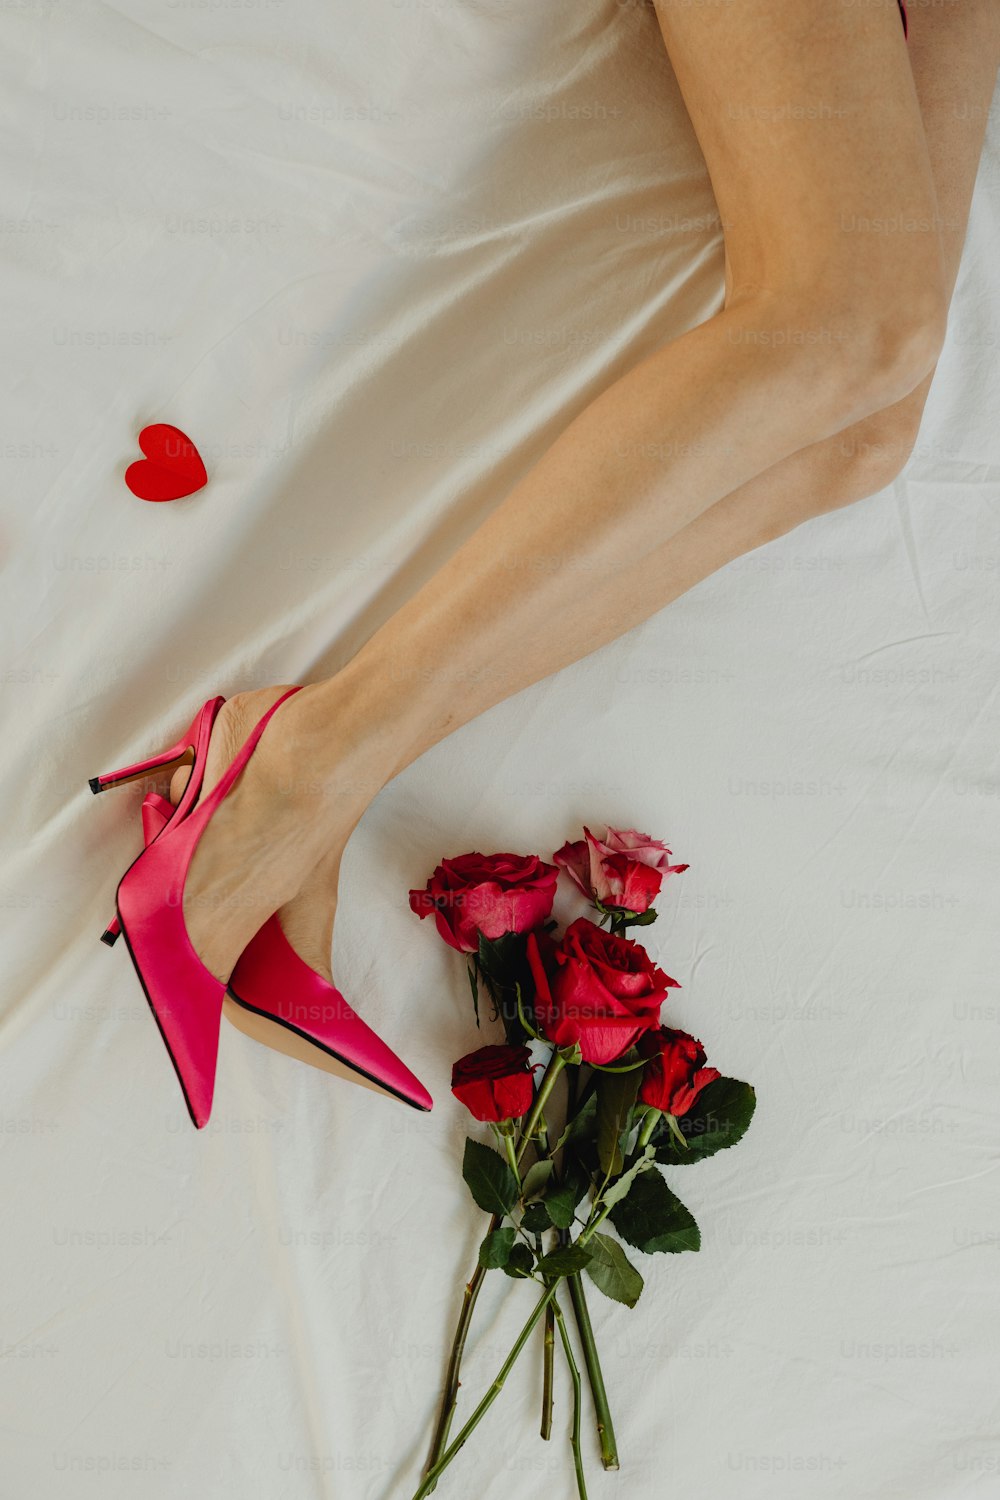 Une femme allongée sur un lit avec un bouquet de roses